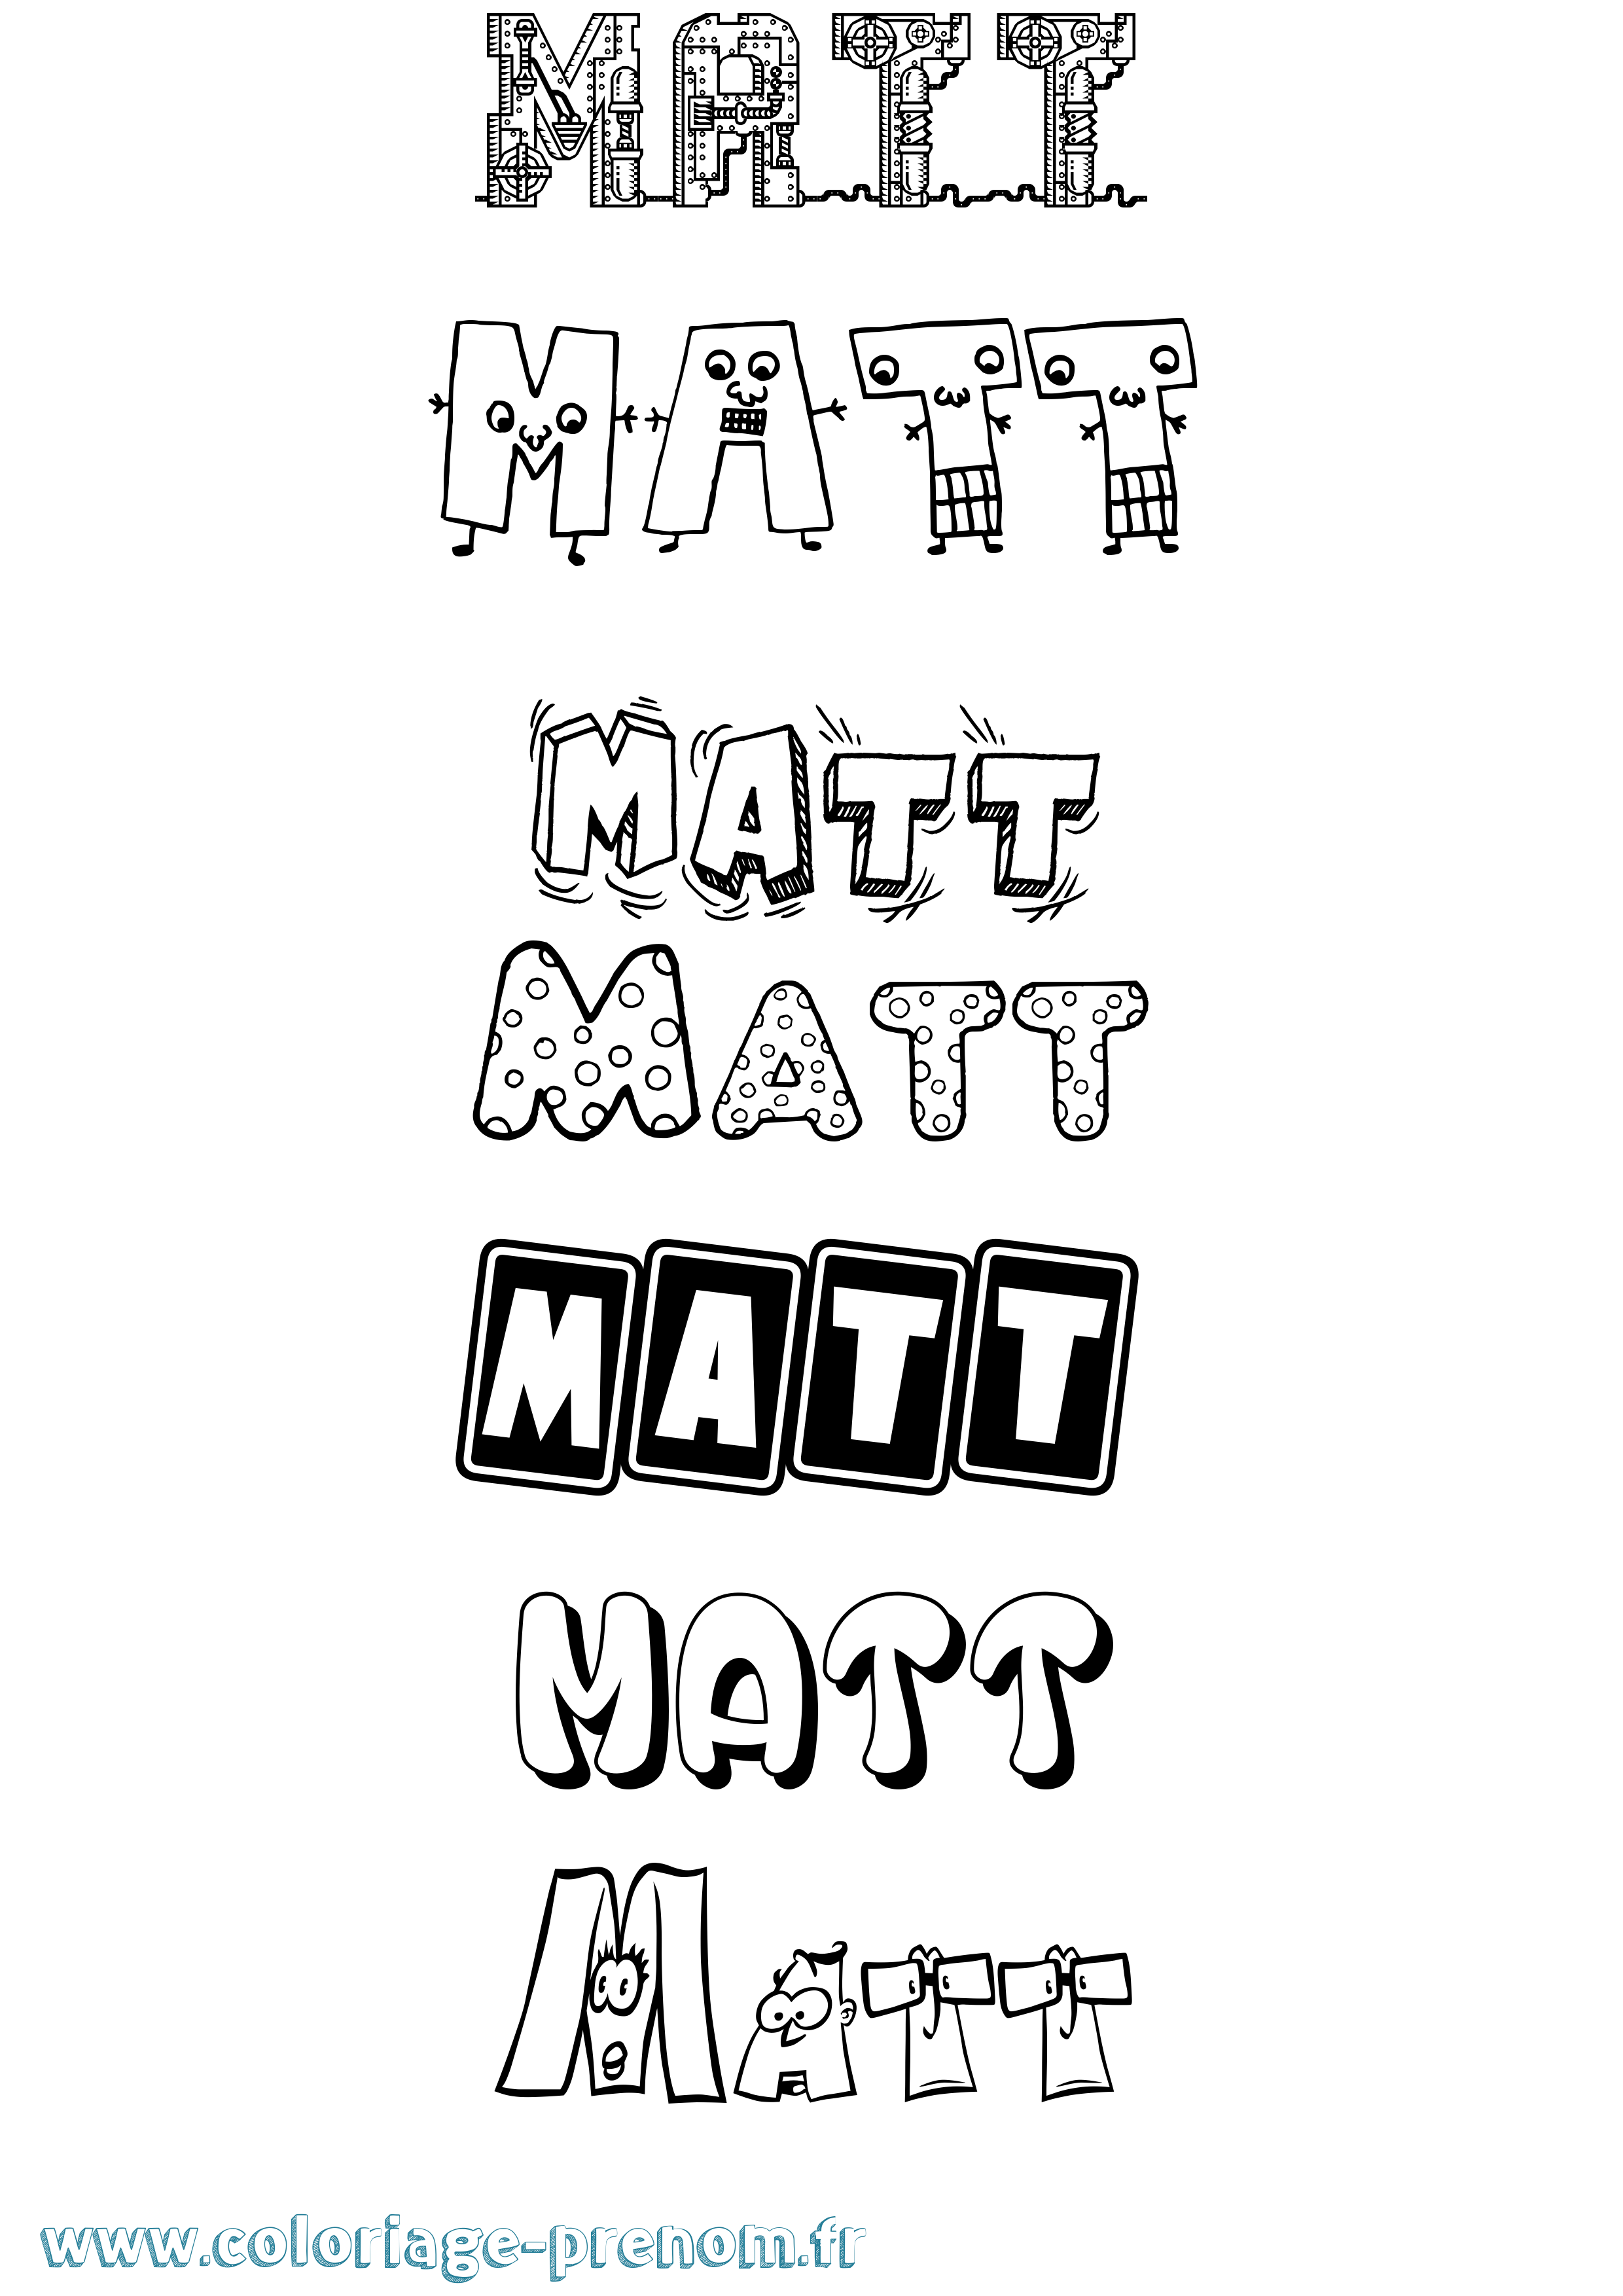 Coloriage prénom Matt